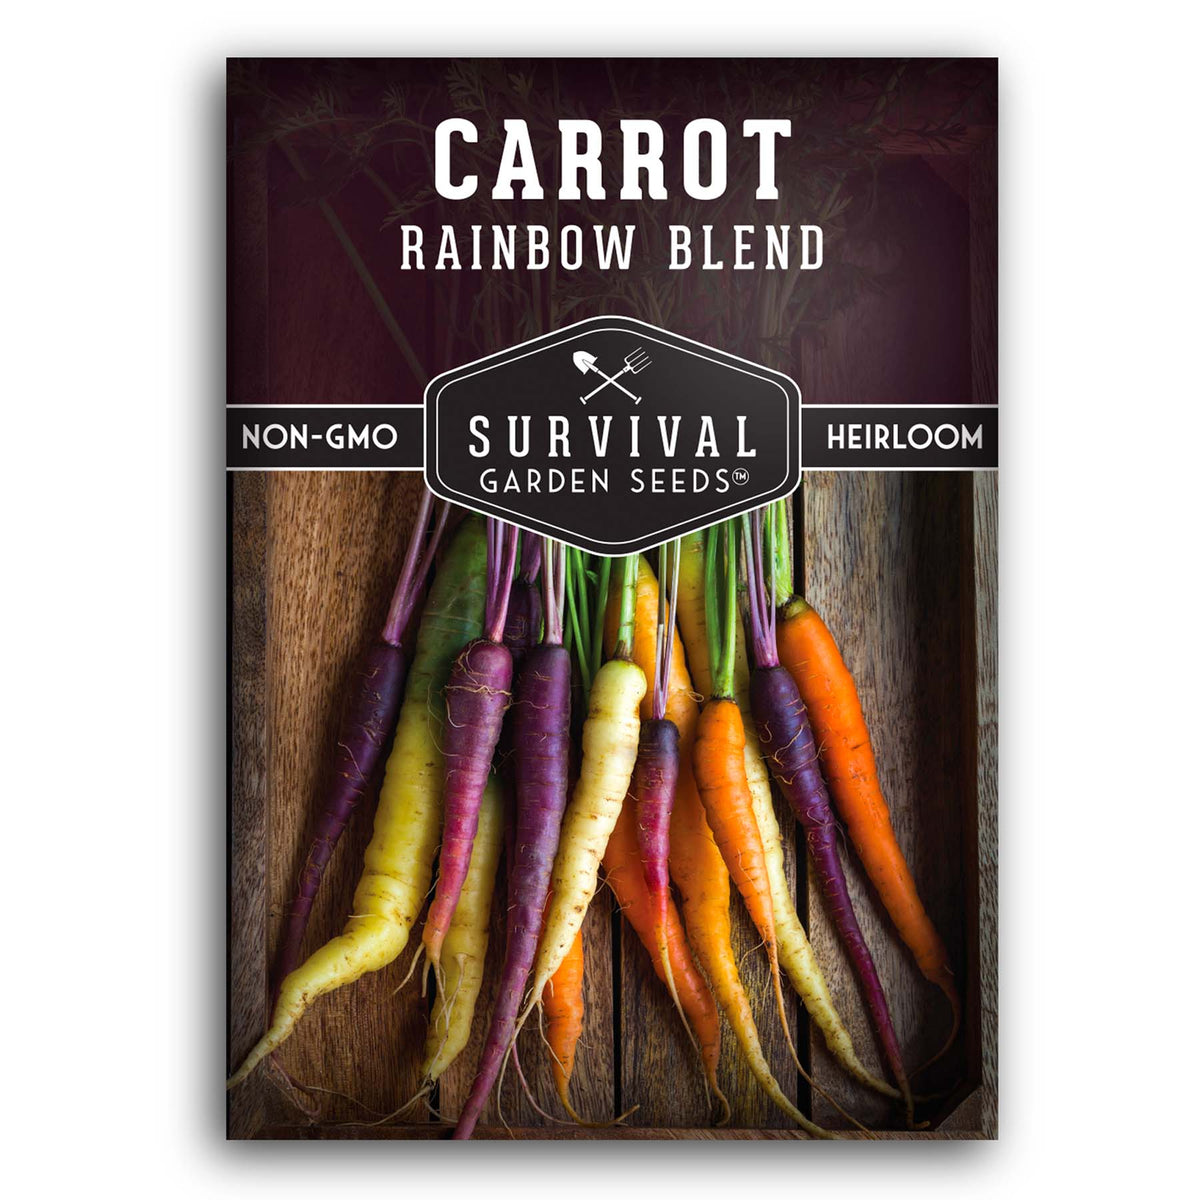 Rainbow Blend Carrot Seeds